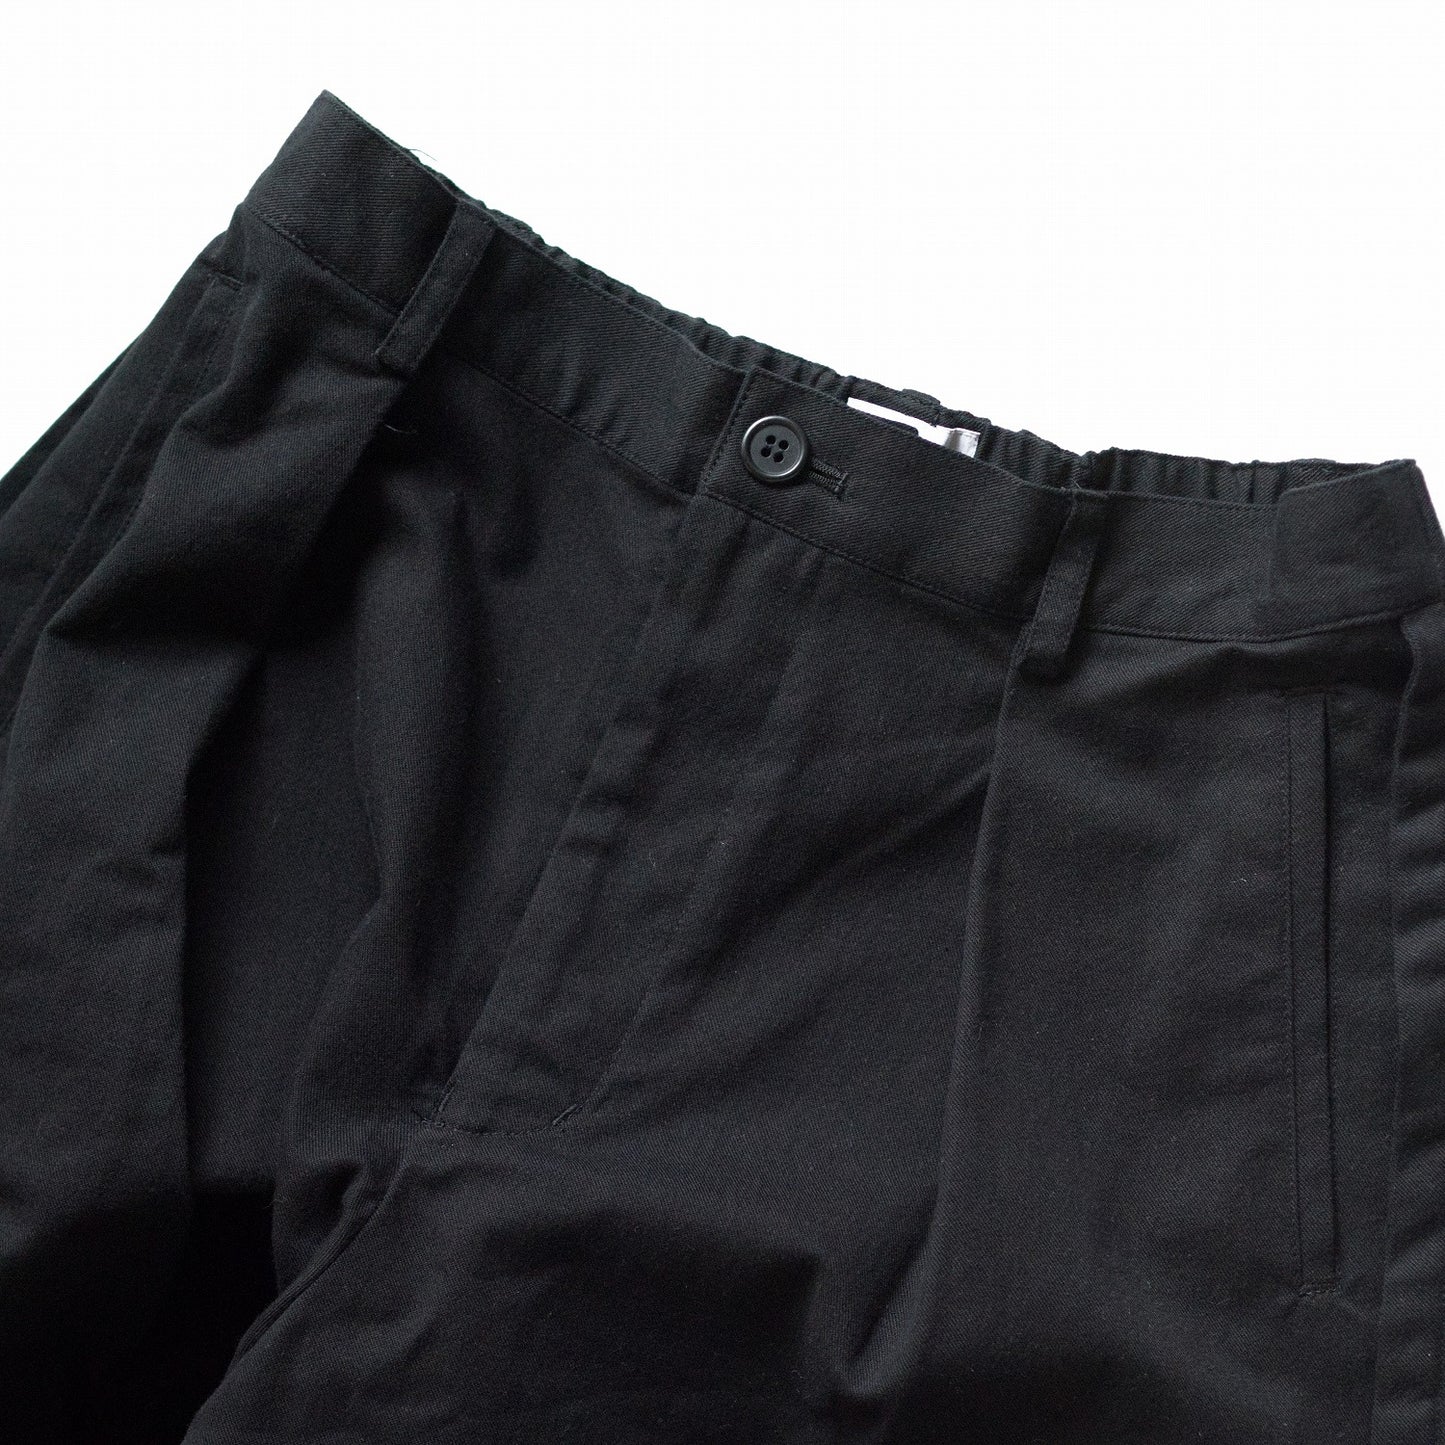 inside-out short culotte pants